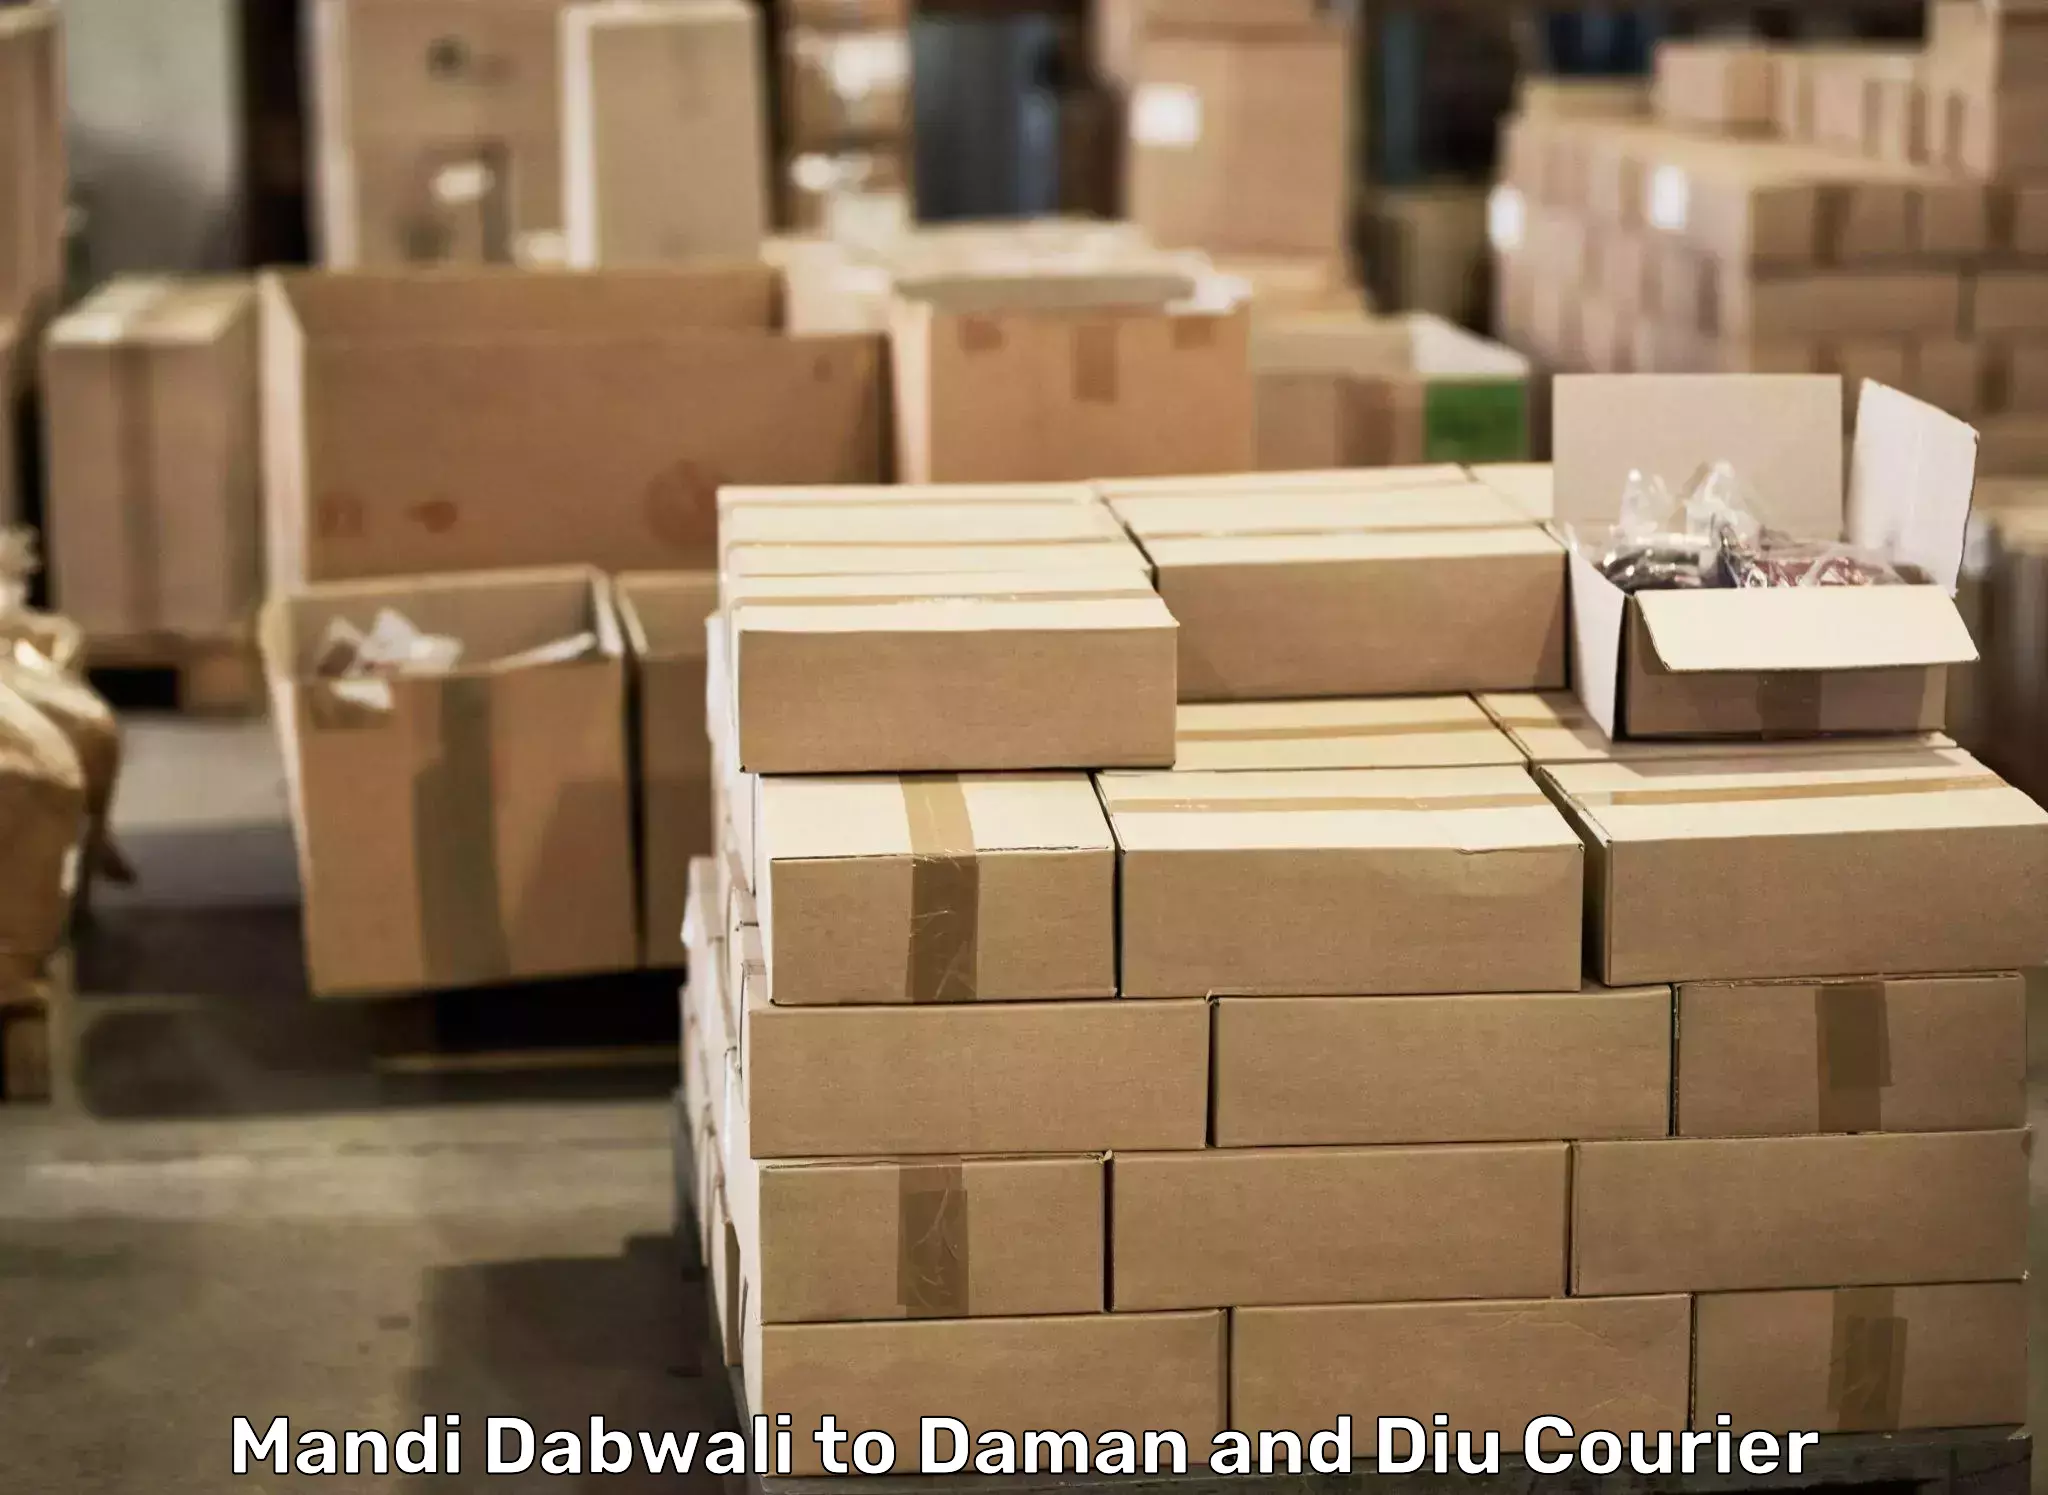 Professional moving assistance Mandi Dabwali to Daman